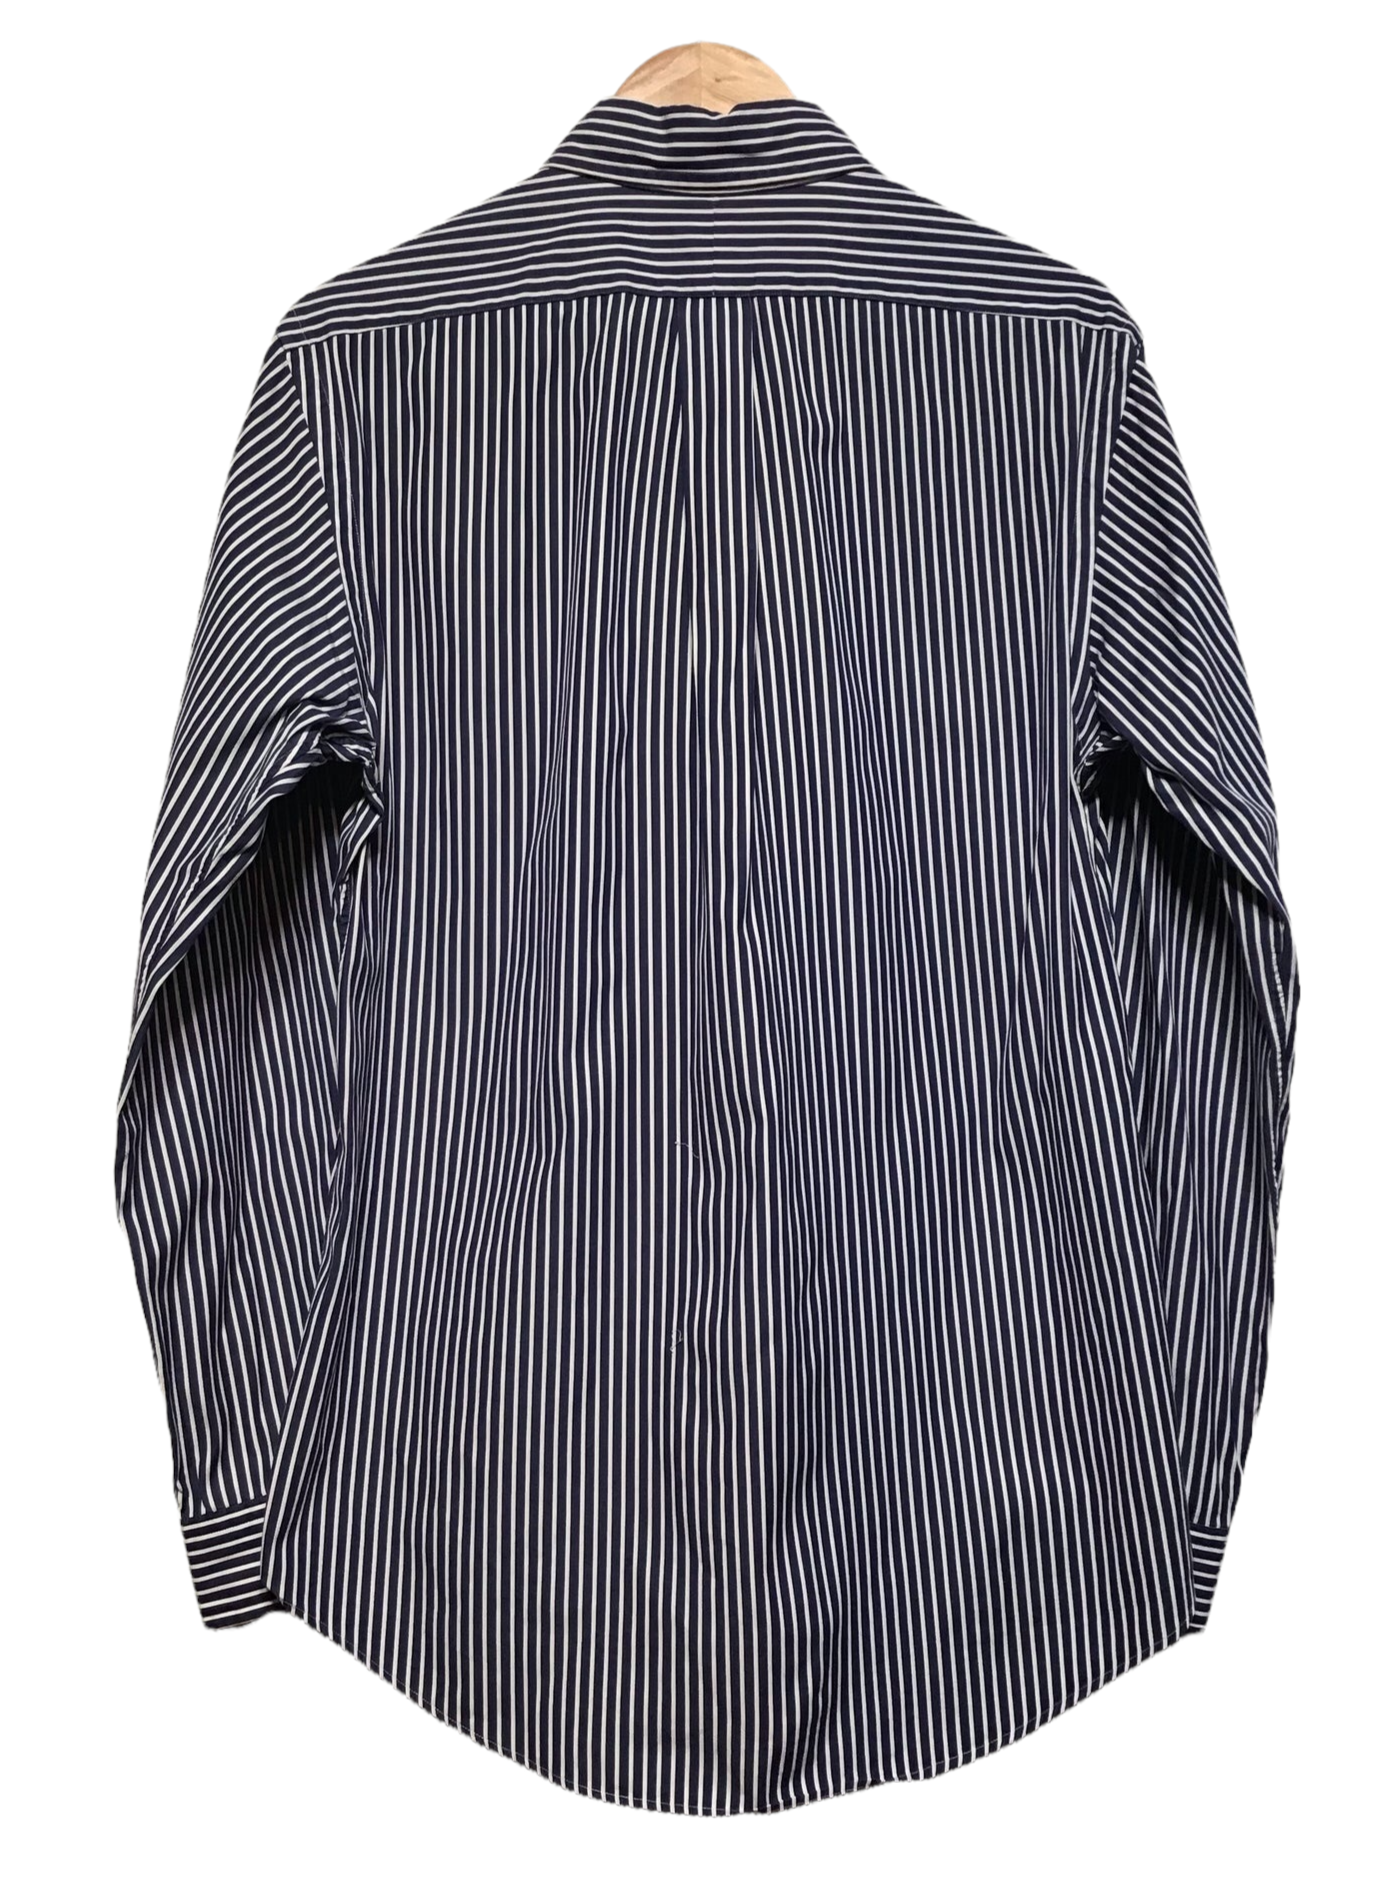 Ralph Lauren Pinstripe Shirt (Size M)